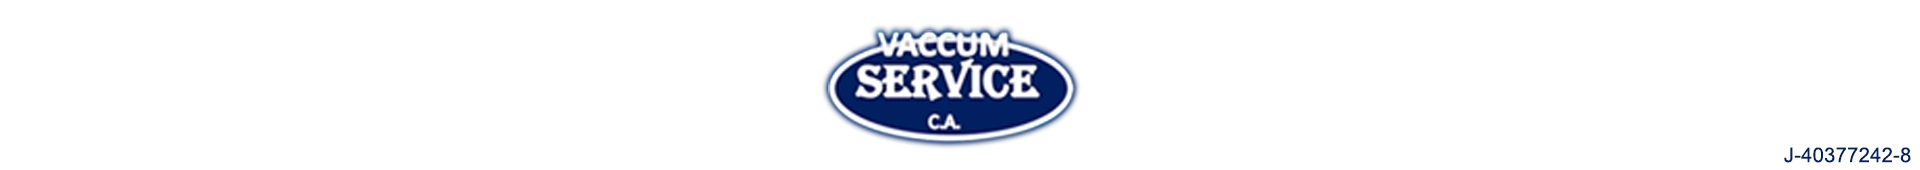 Imagen 1 del perfil de Vaccum Service